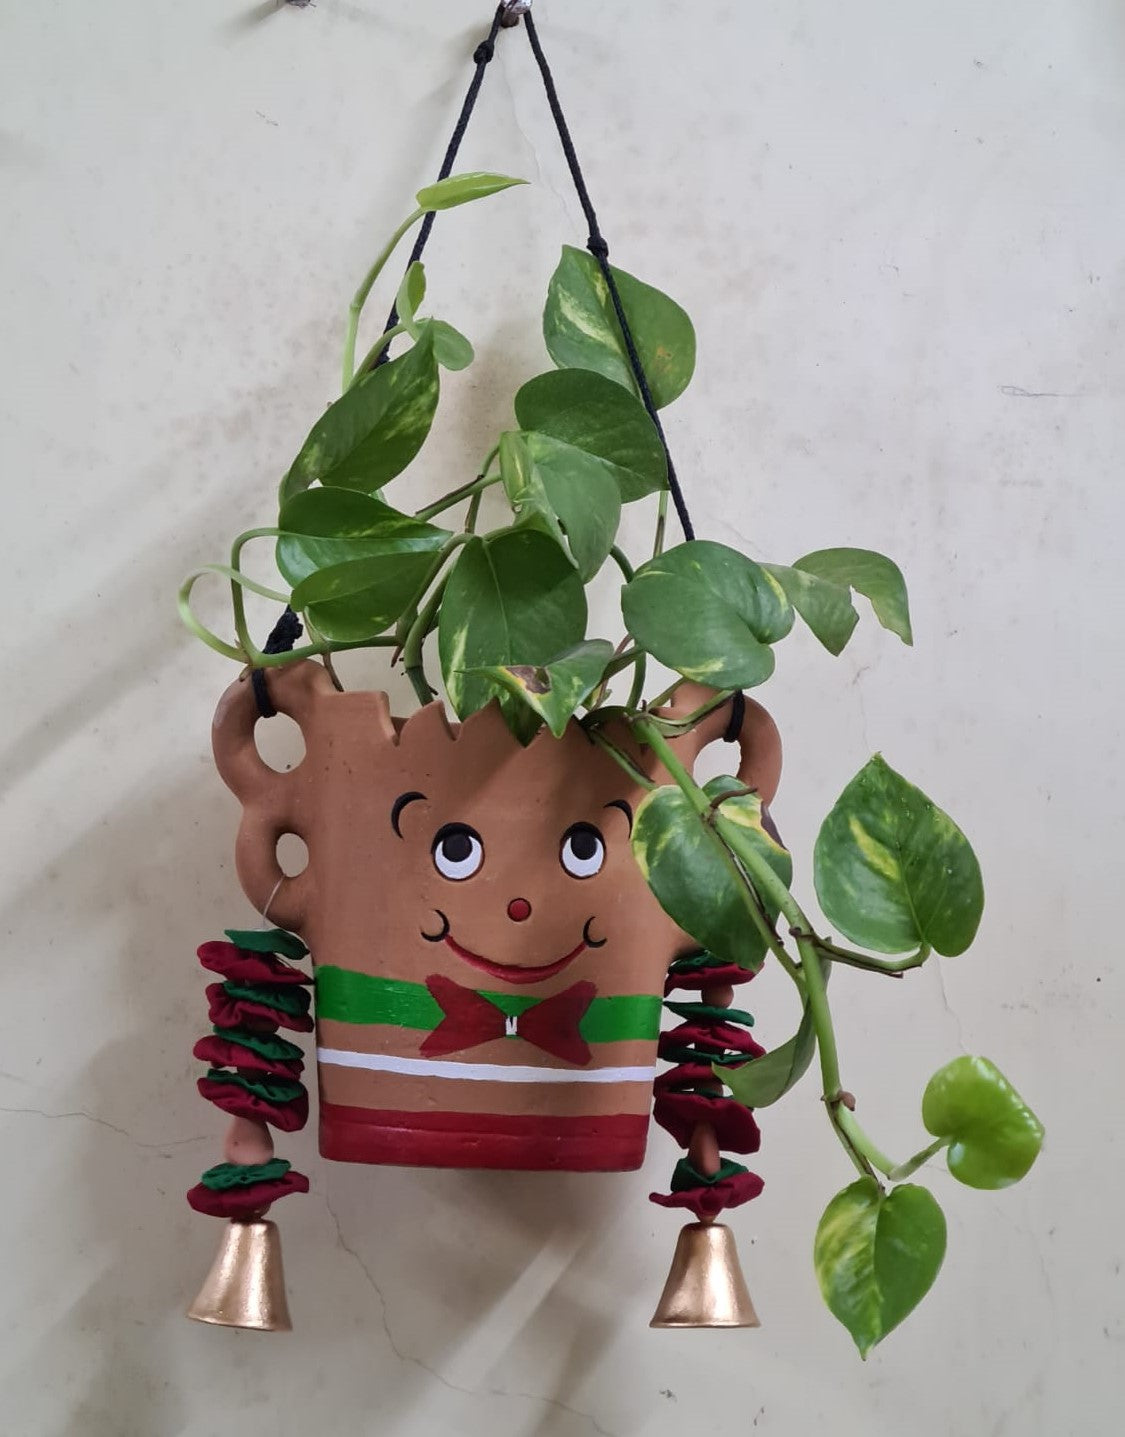 Ceramic Christmas planter